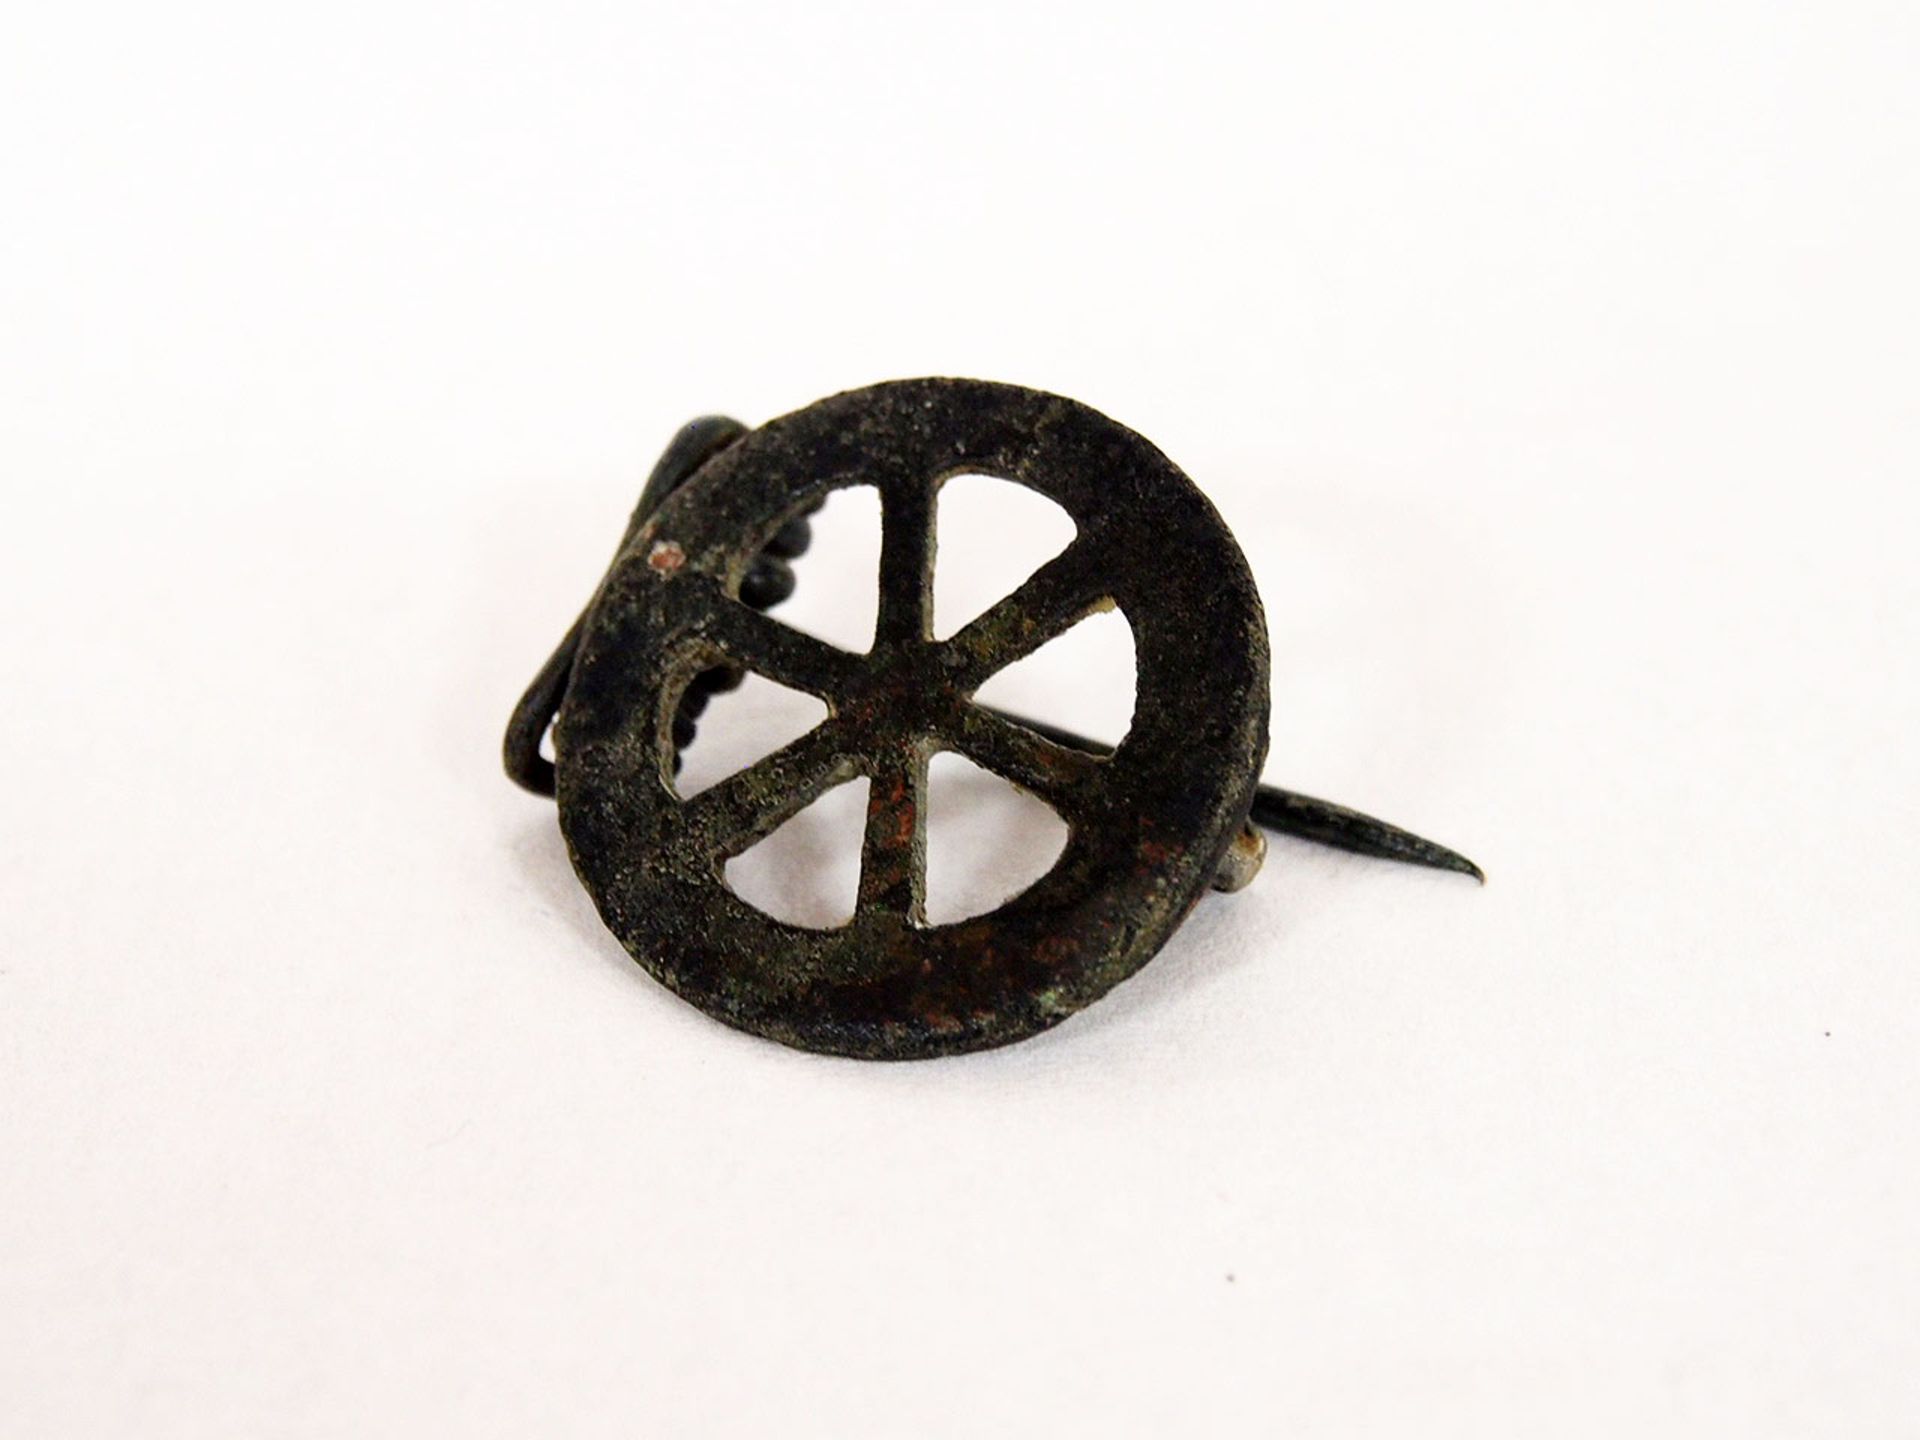 RädchenfibelBronze, Römisch 3. / 4. Jh. n. Chr., Durchmesser 3 cm